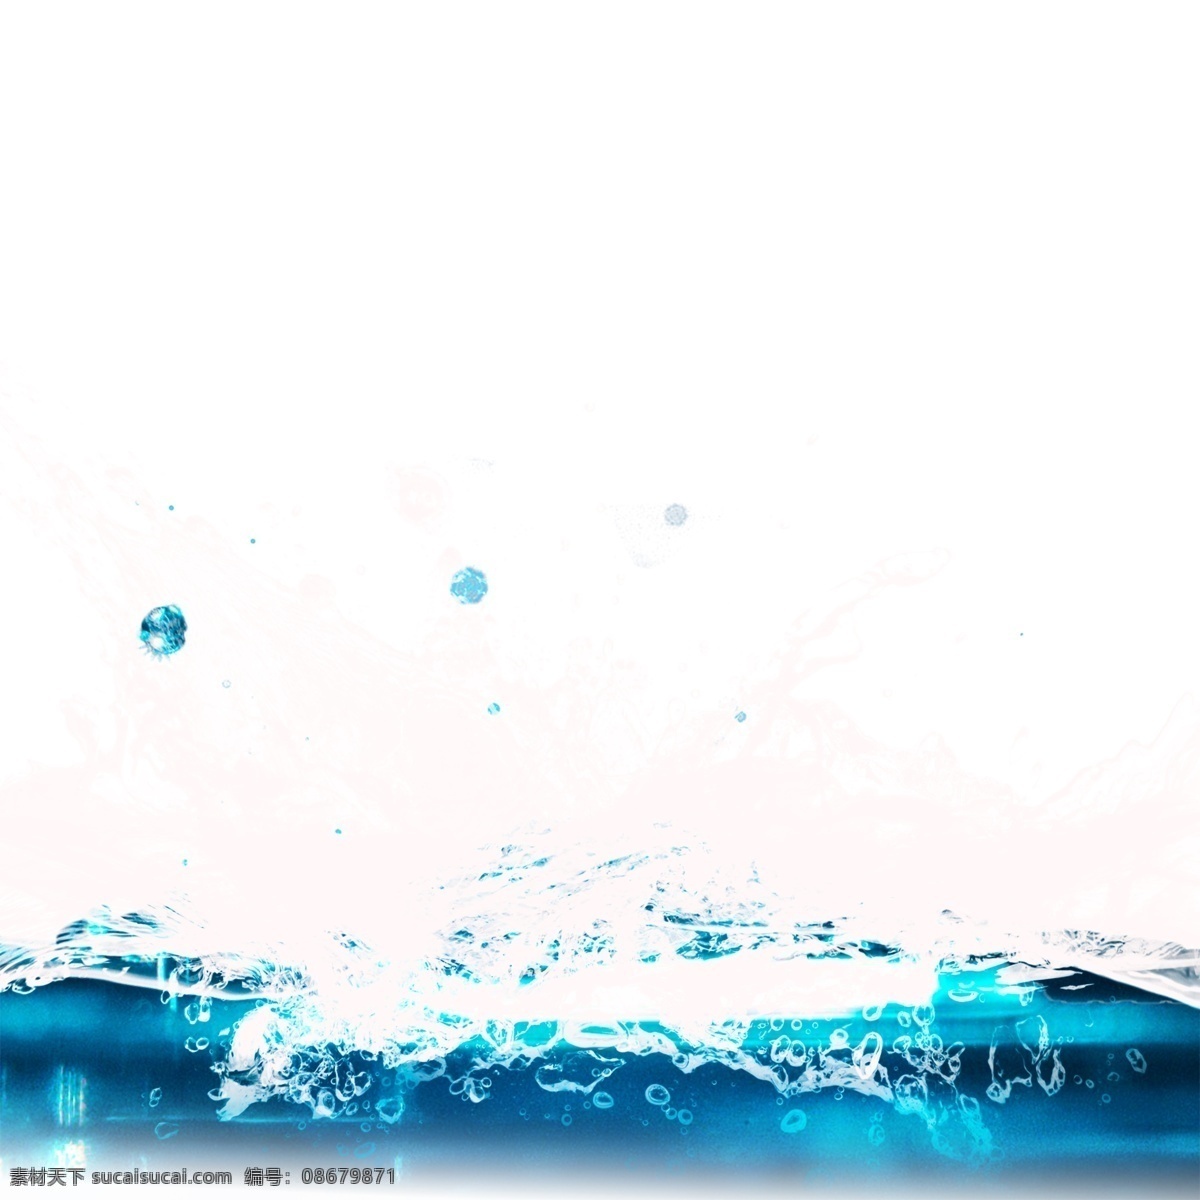 蓝色 水面 水 纹 元素 水浪 水流 白色 水花 喷溅 动感 水珠 水滴 蓝色水花 晶莹